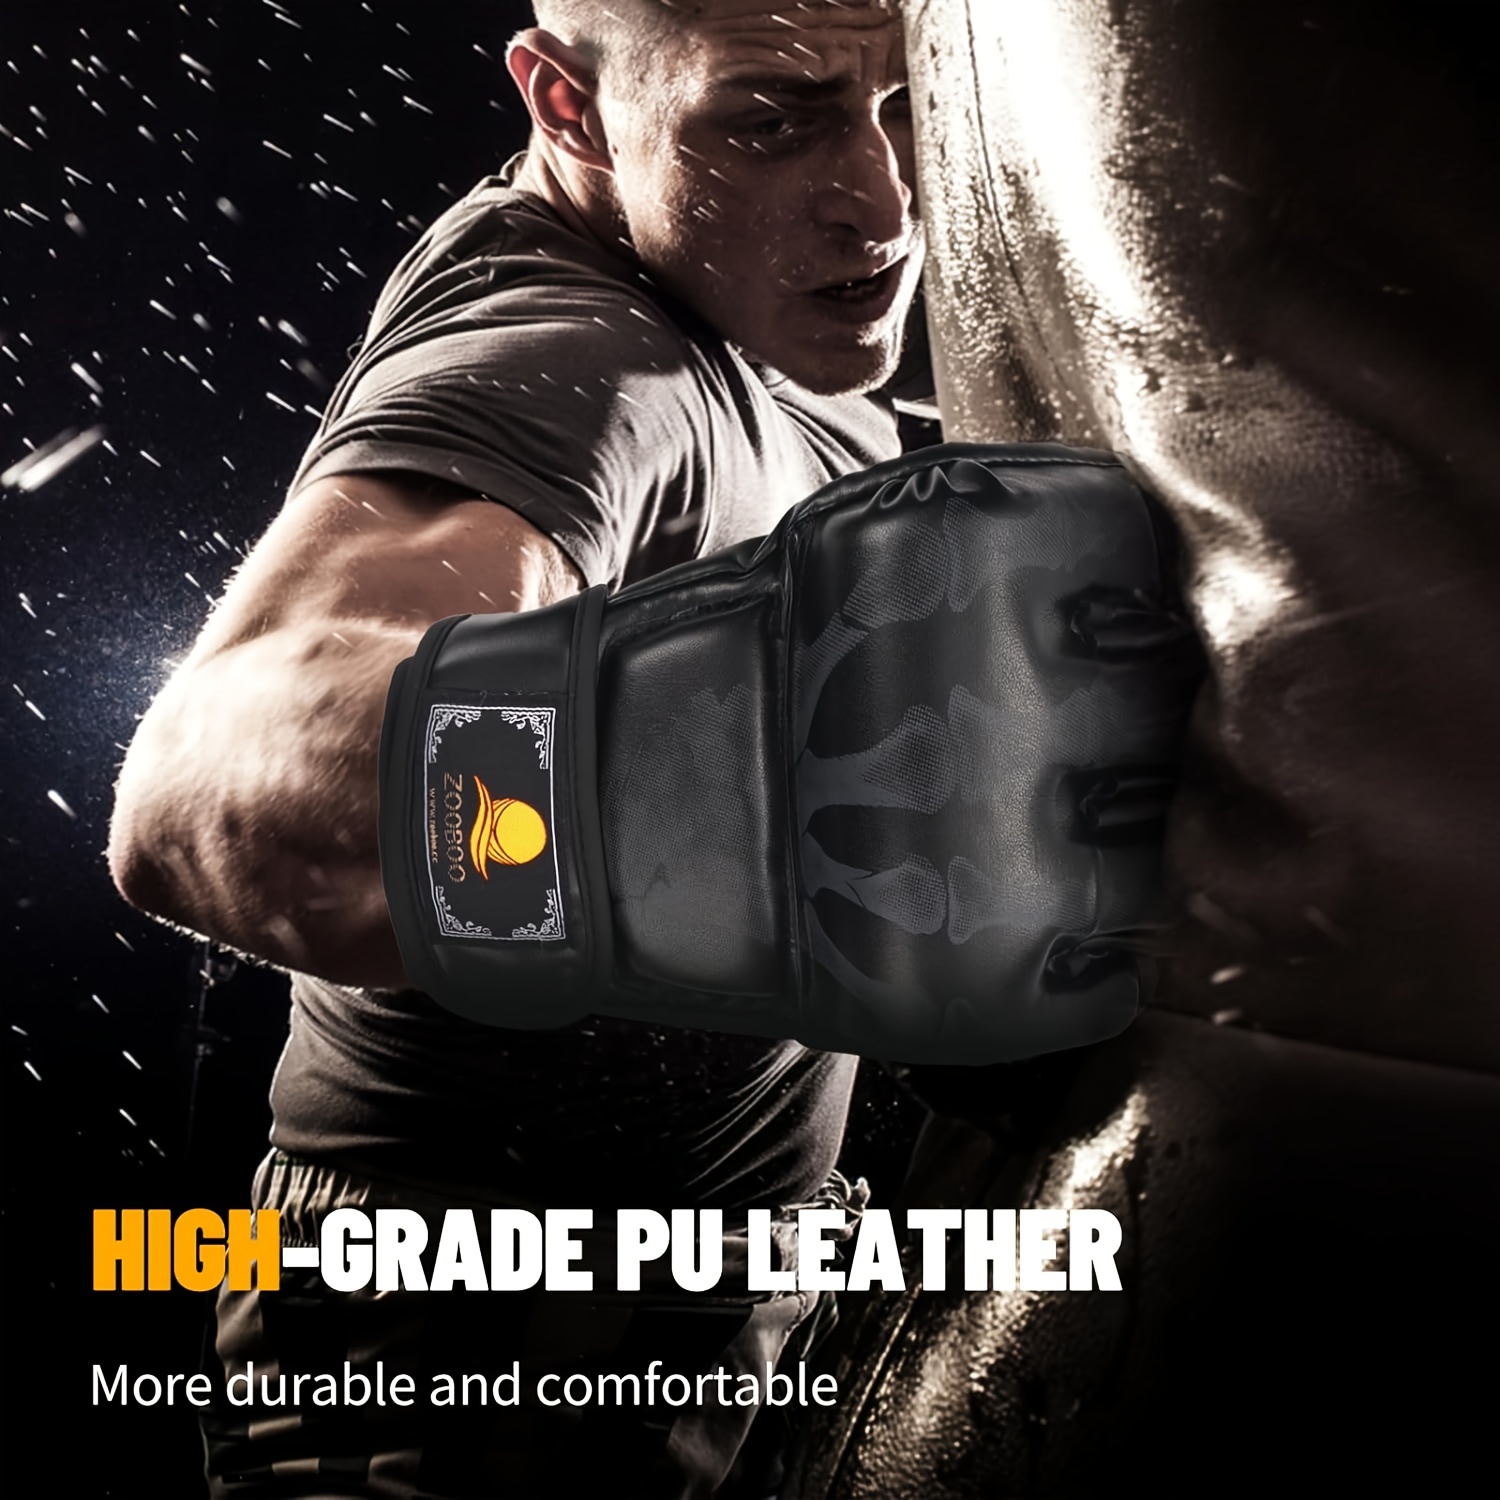 Brace Master Guantes MMA para hombres y mujeres, guantes de kickboxing con  más acolchado, guantes de boxeo sin dedos para bolsa pesada, Muay Thai